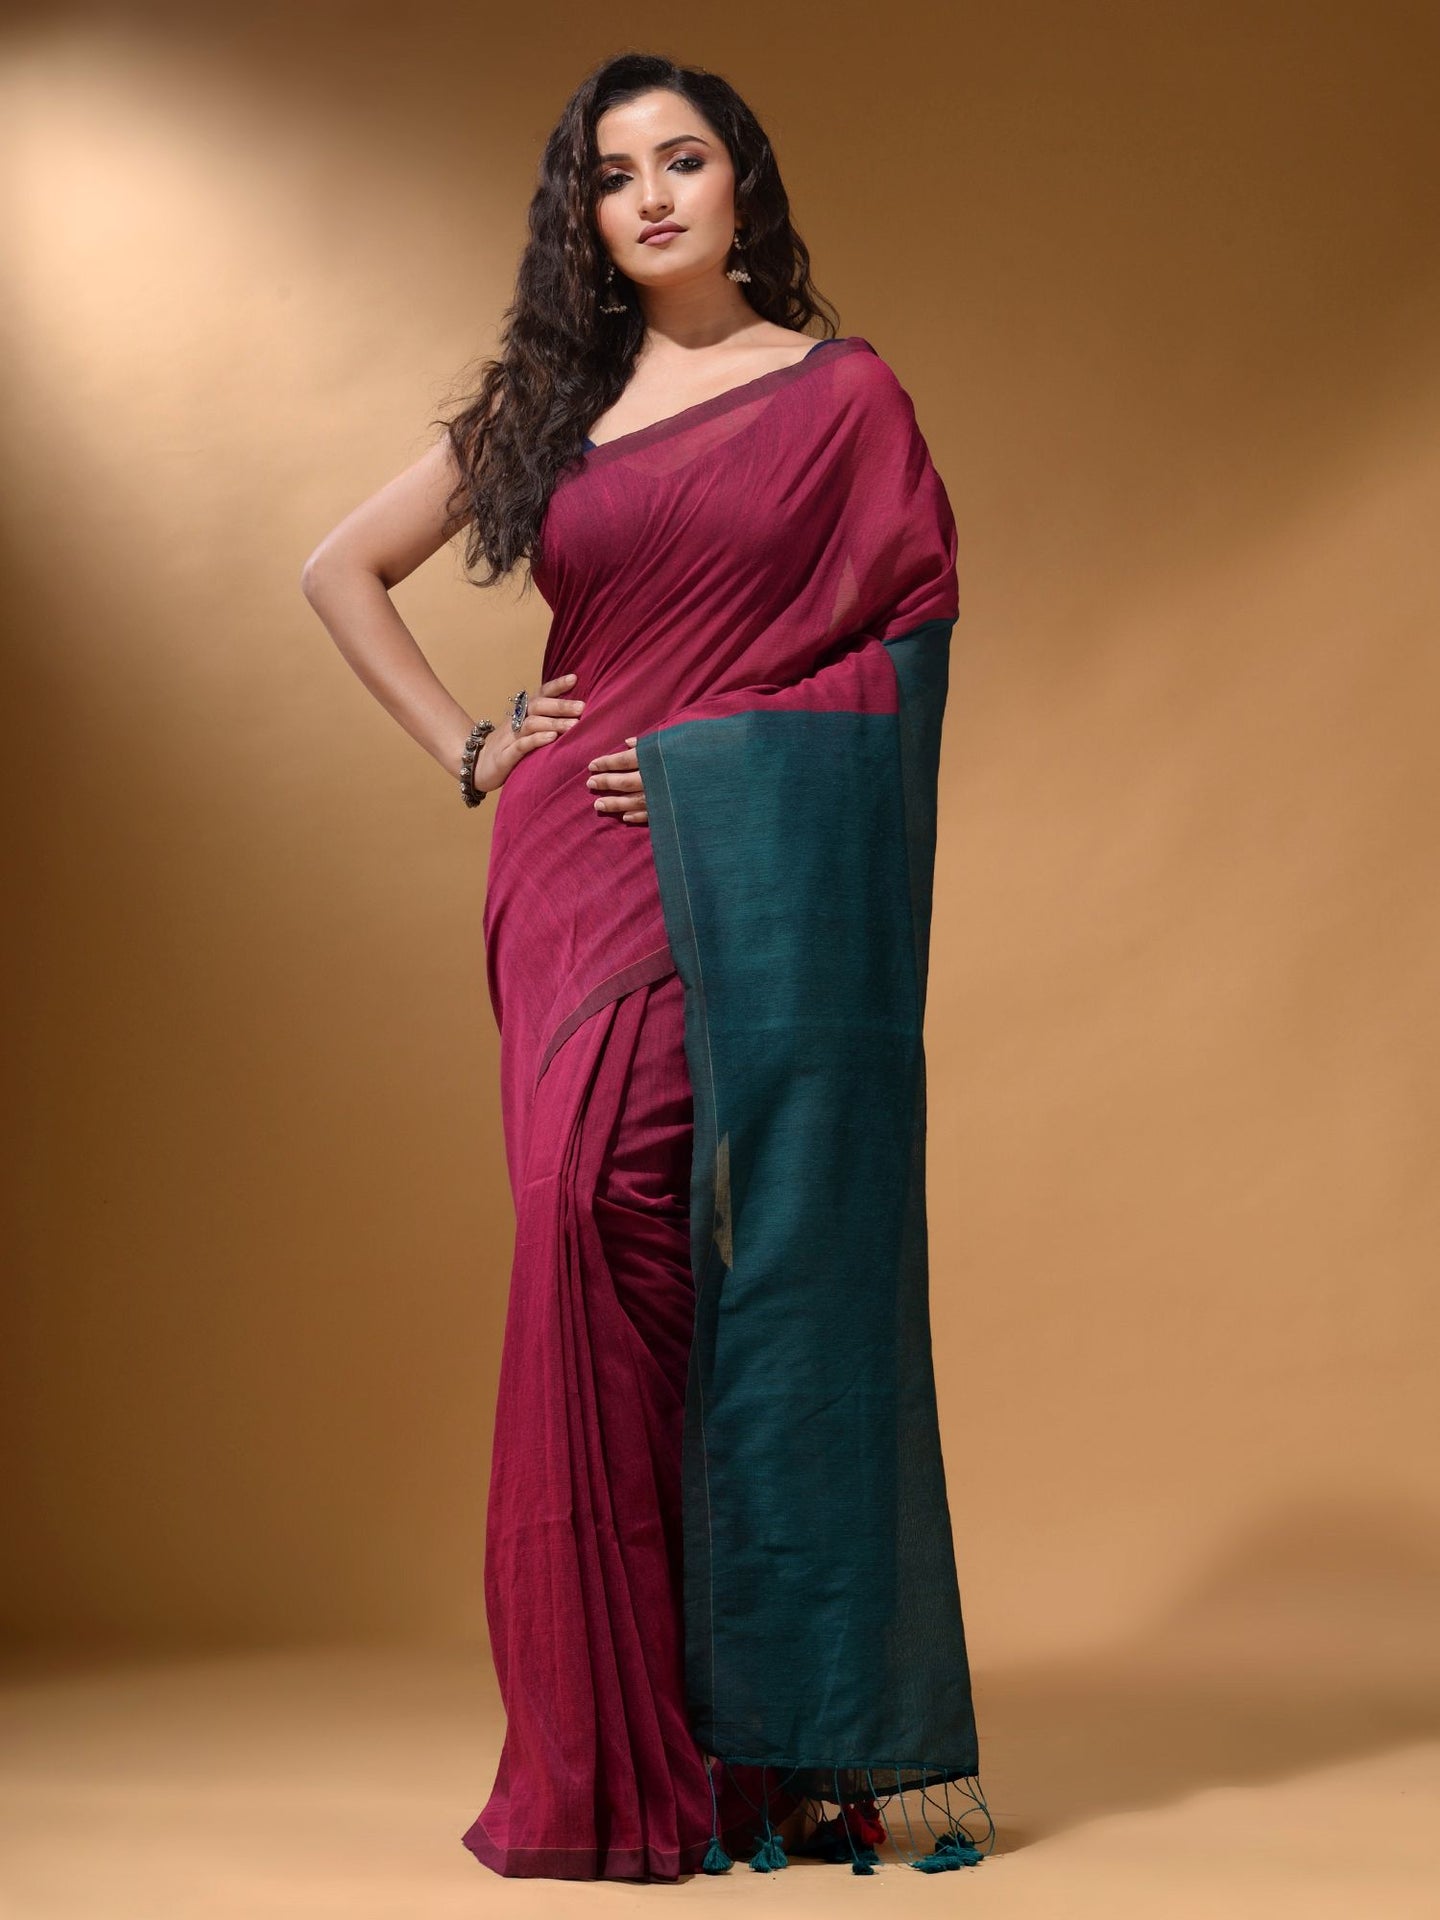 Magenta Cotton Handspun Soft Saree With Contrast Teal Pallu